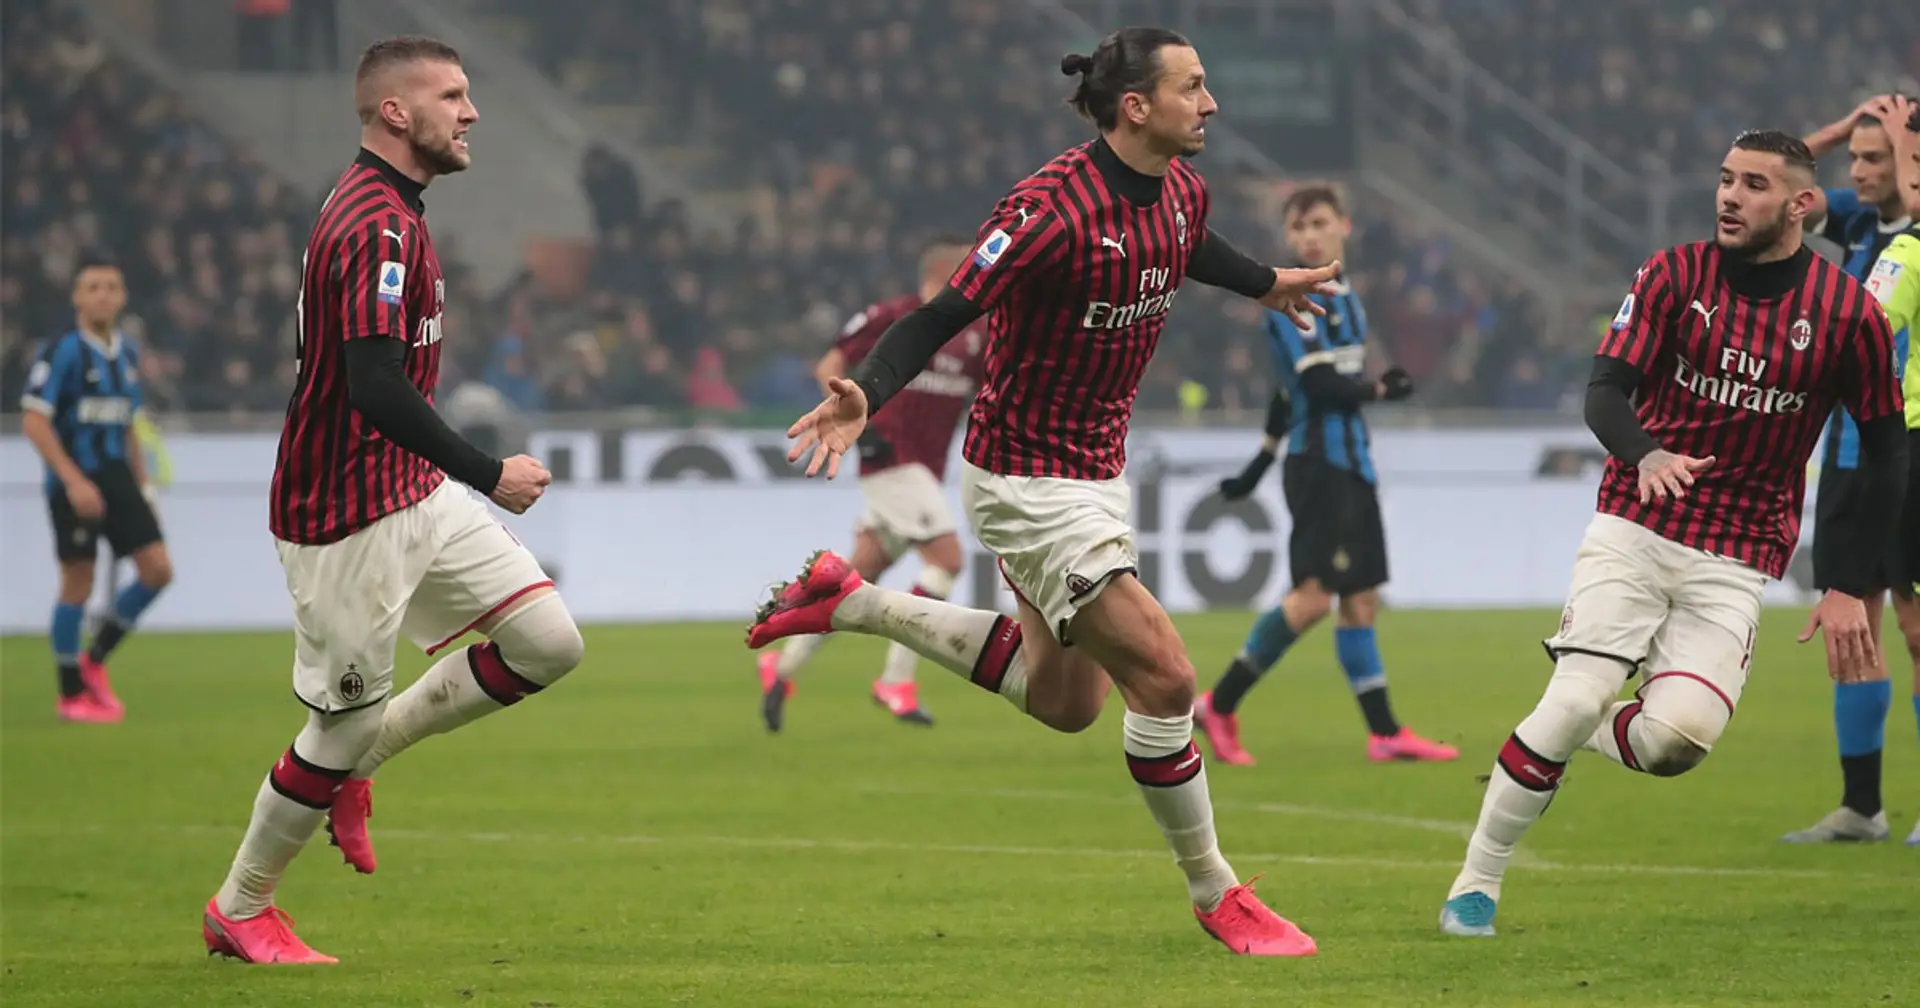 Nonostante i crescenti contagi, la Lega non cambia idea: il Derby di Milano si gioca regolarmente